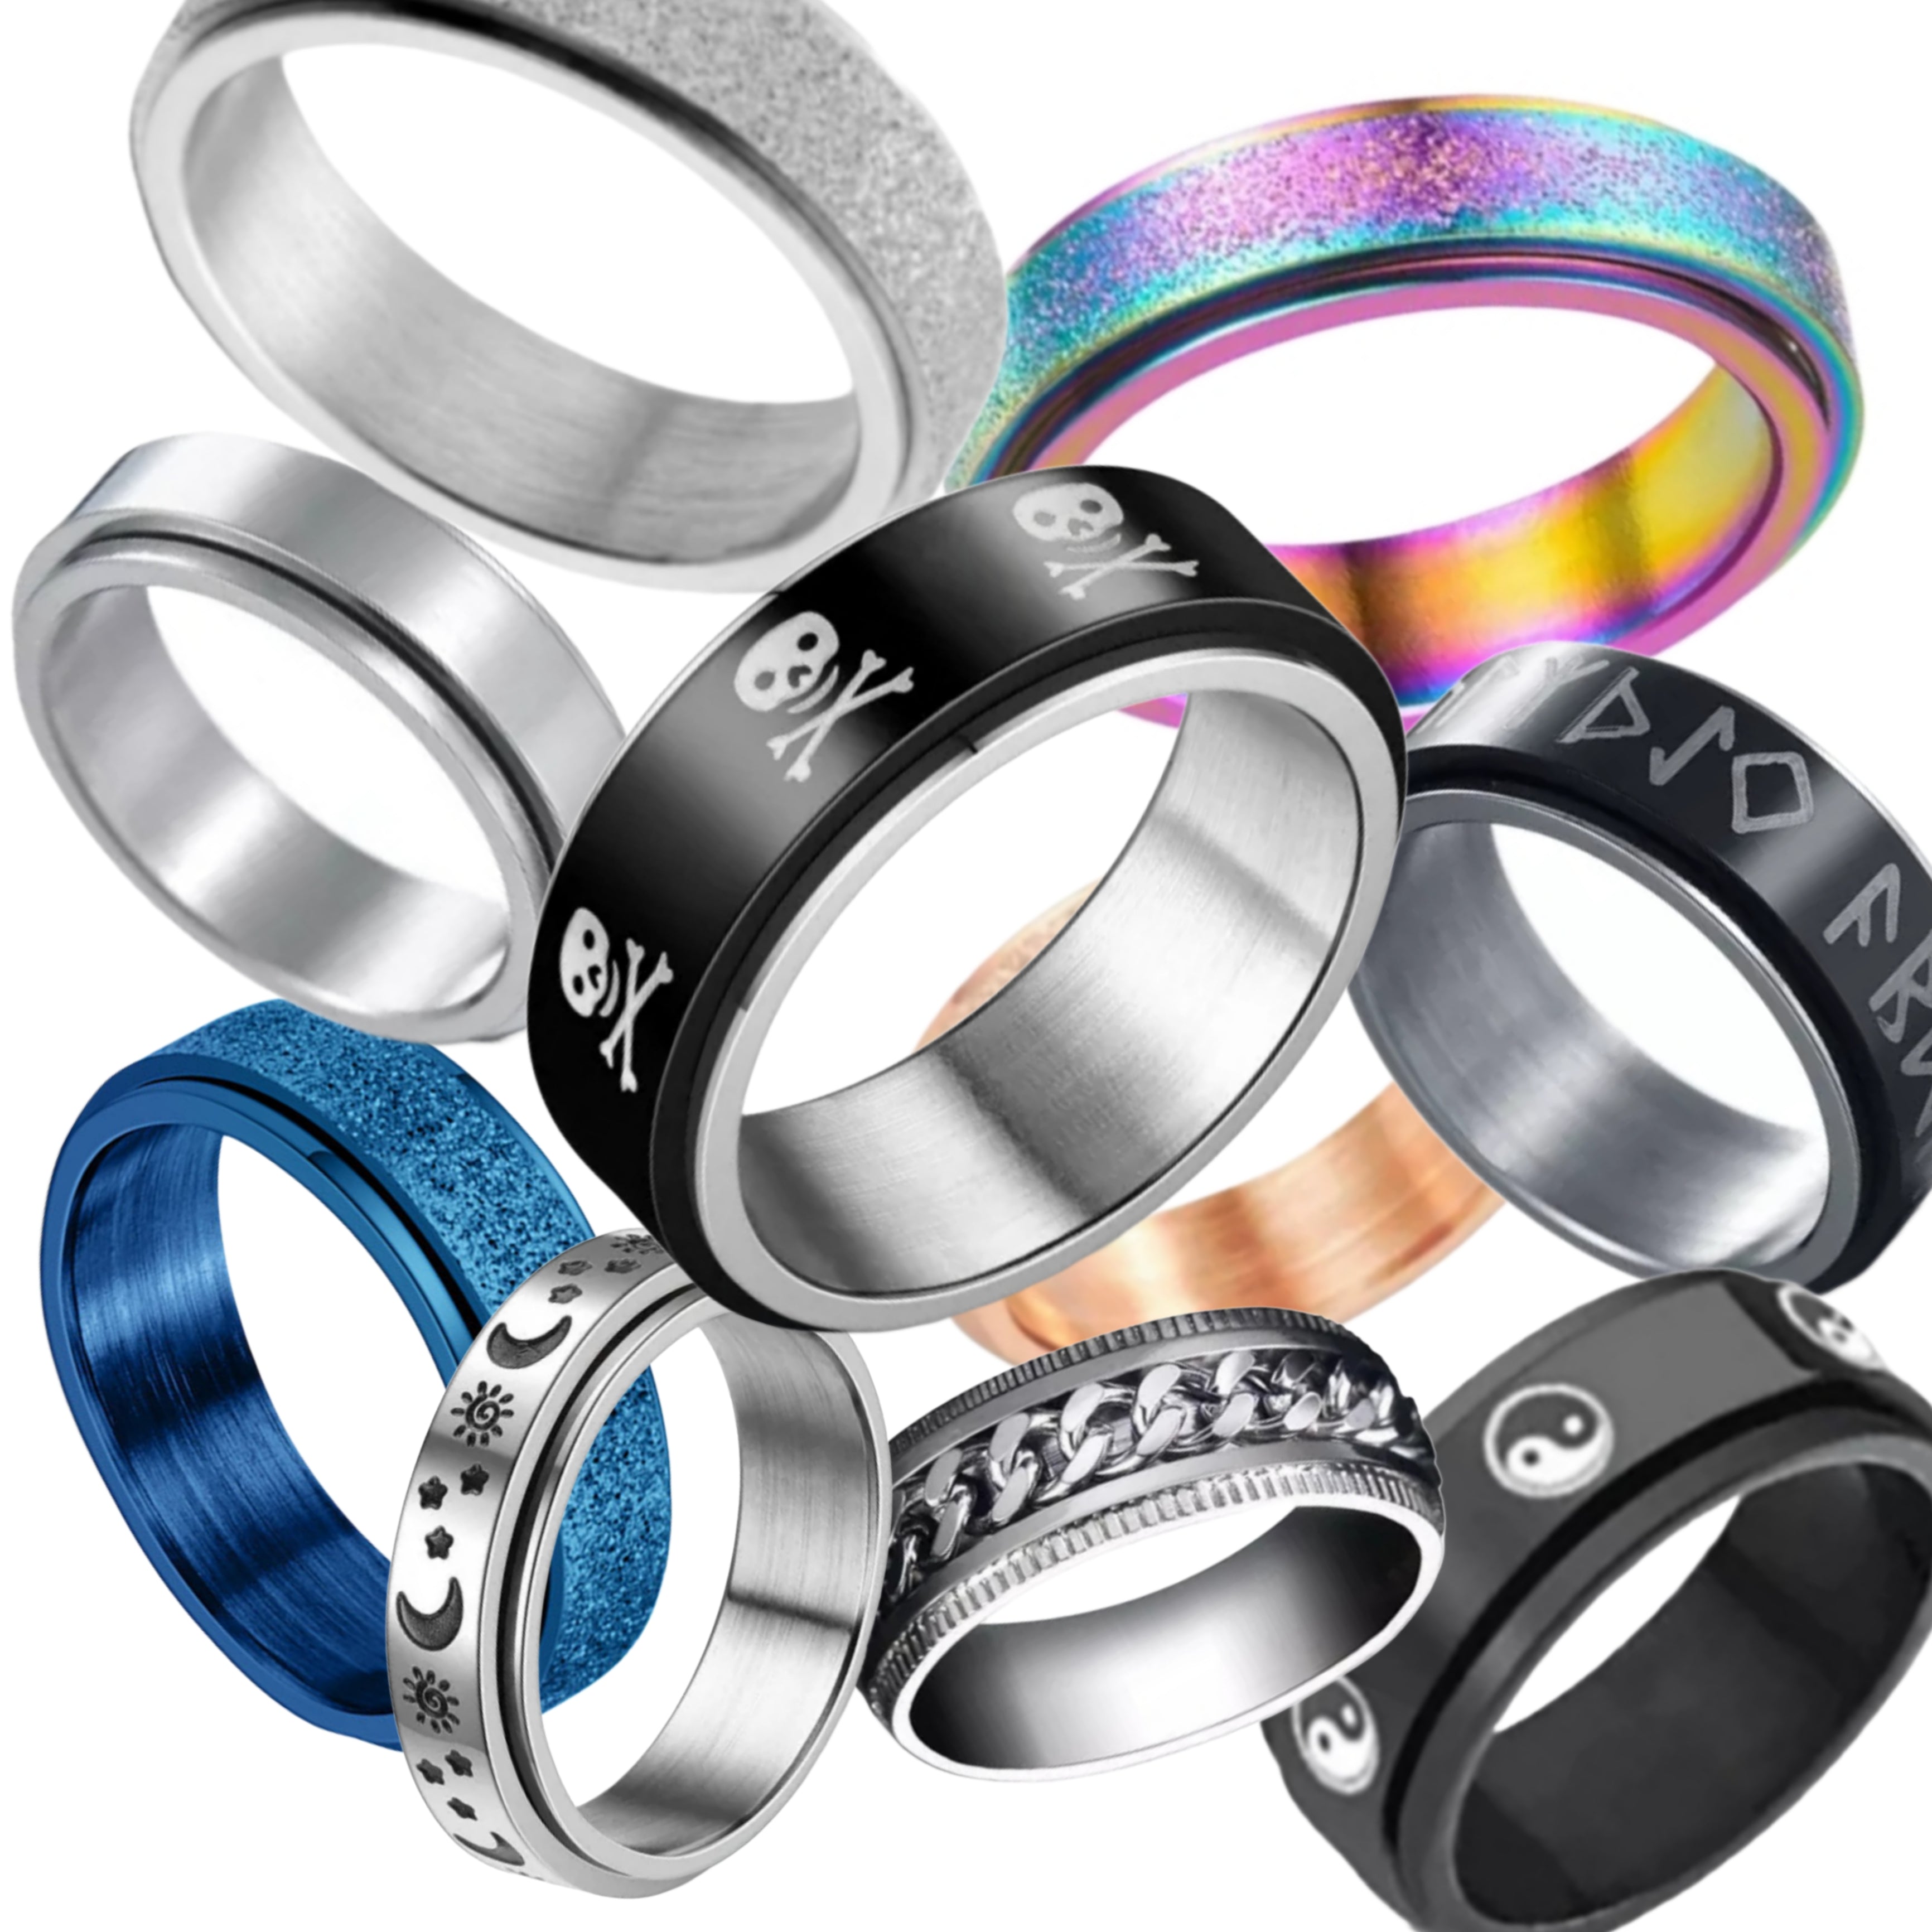 Rainbow Shimmer - Spinning fidget ring